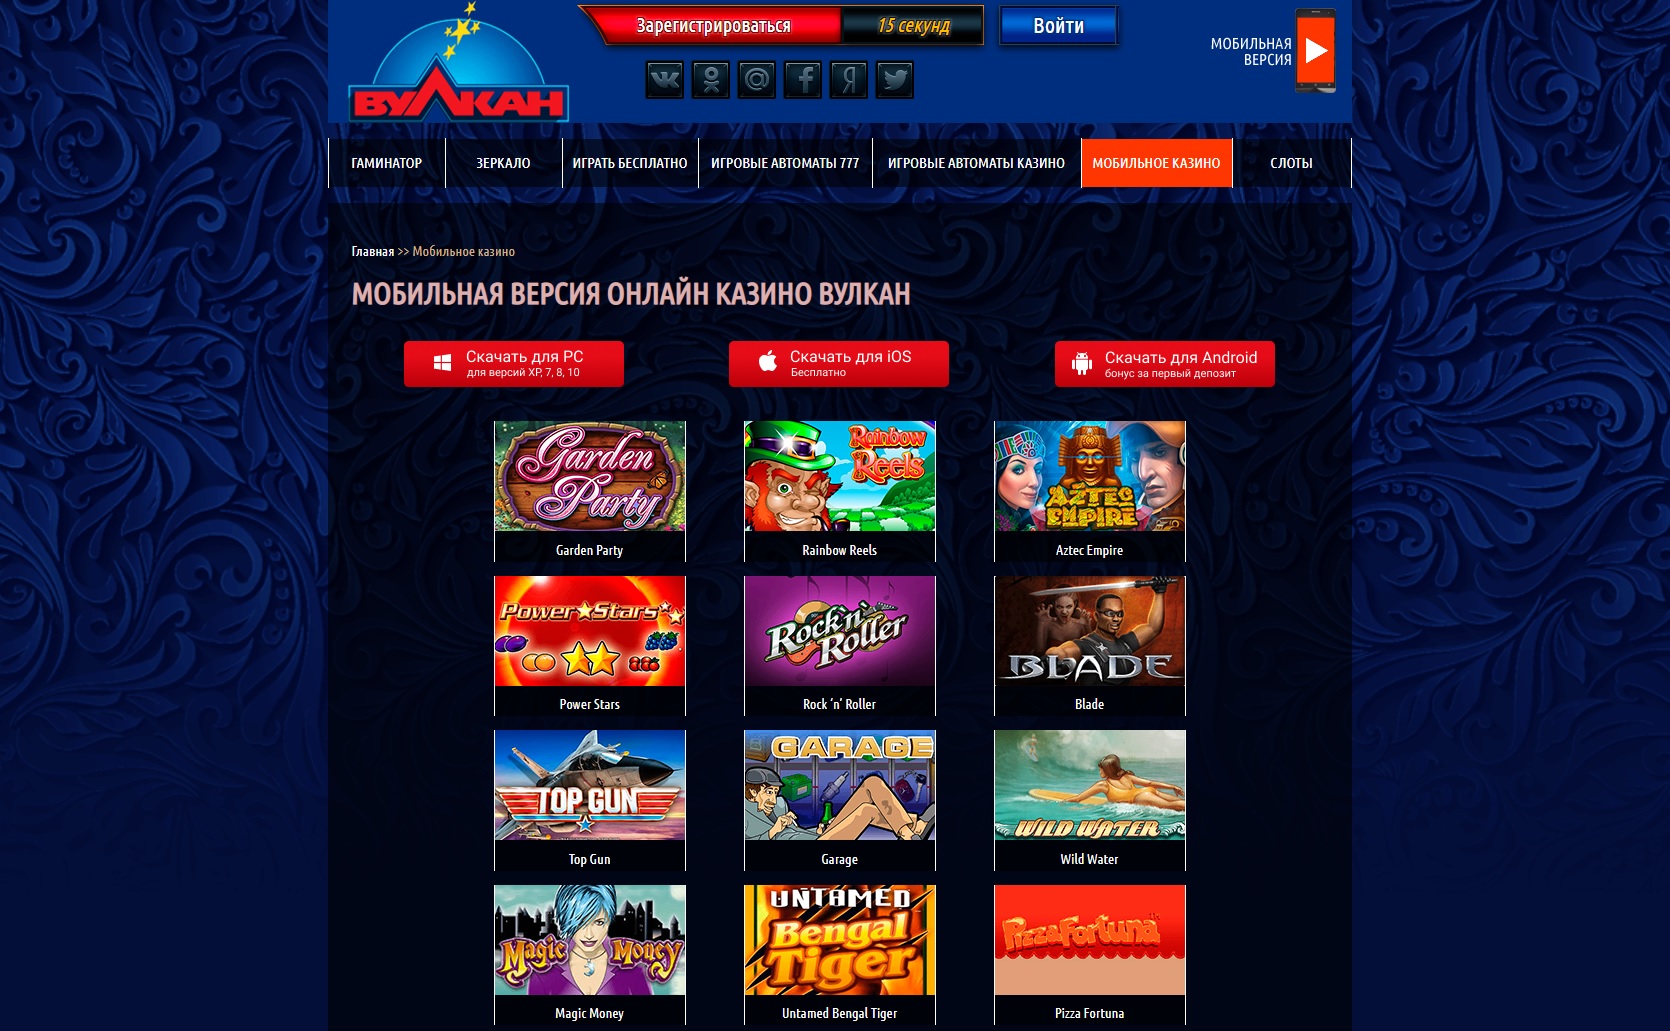 Вулкан Россия казино онлайн - играть на официальном сайте